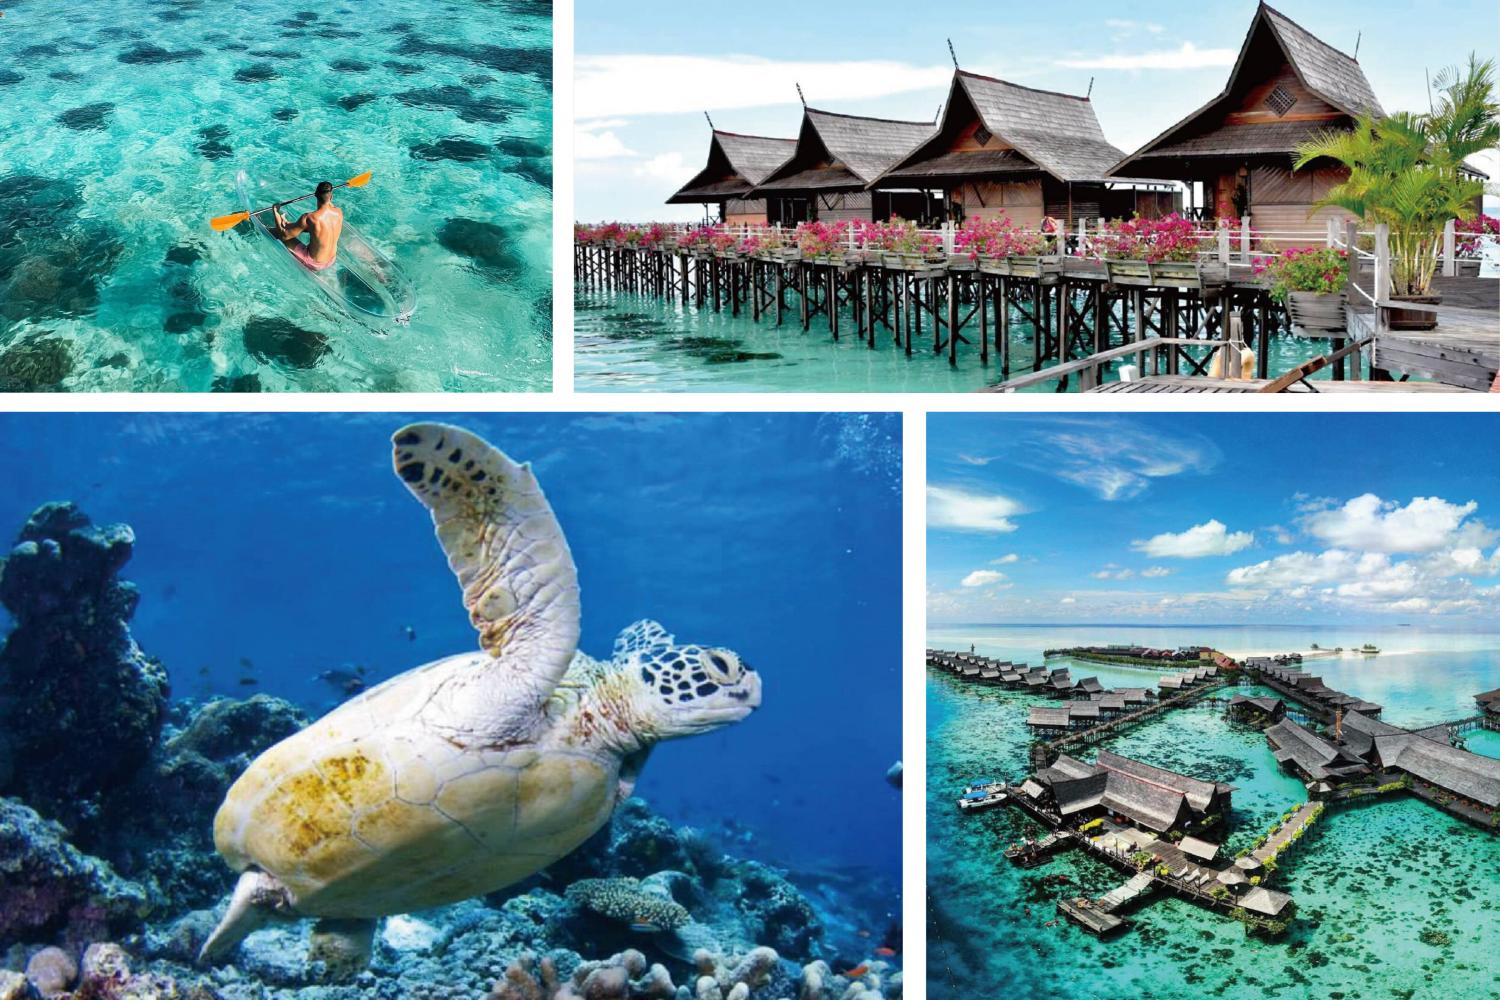 【Sipadan】Kapalai Dive Resort 5 day 4 night hotel diving package